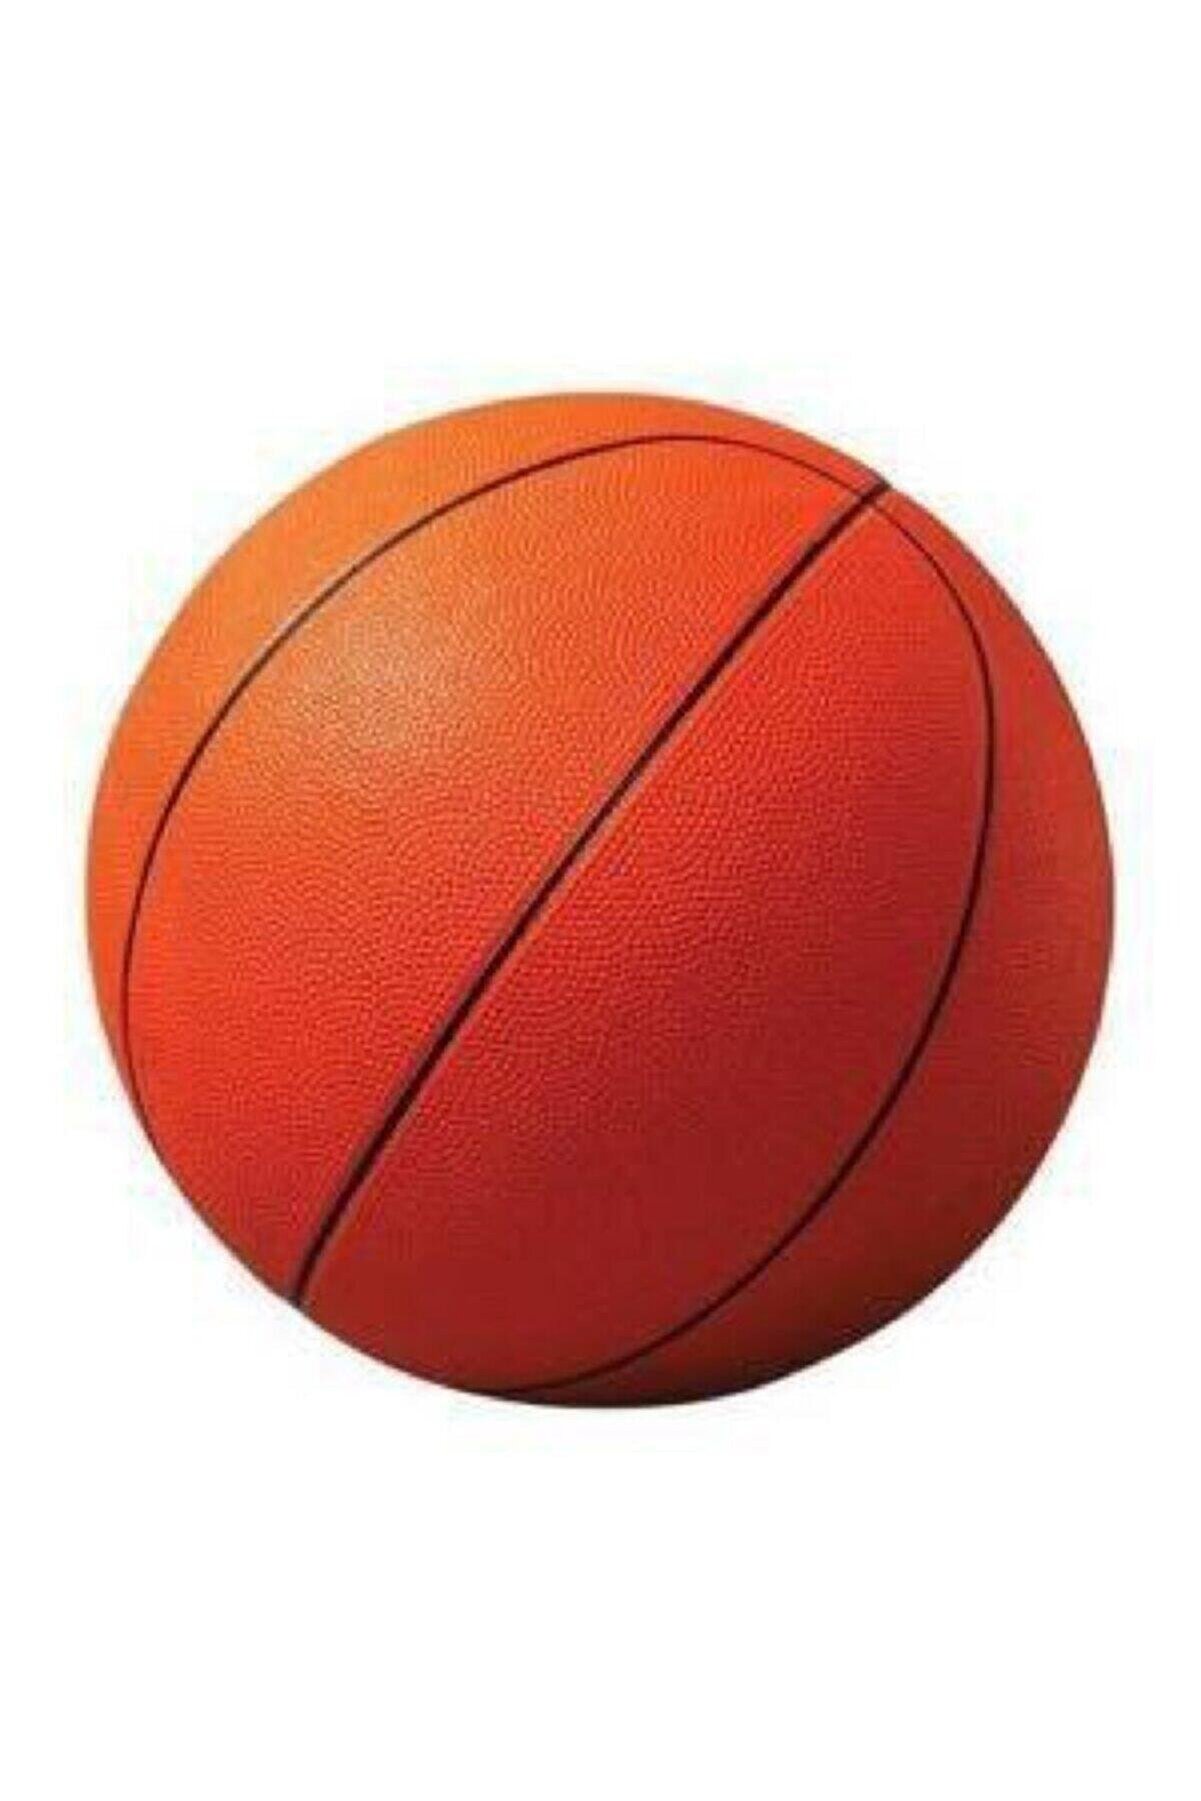 morponi Kauçuk Basketbol Topu